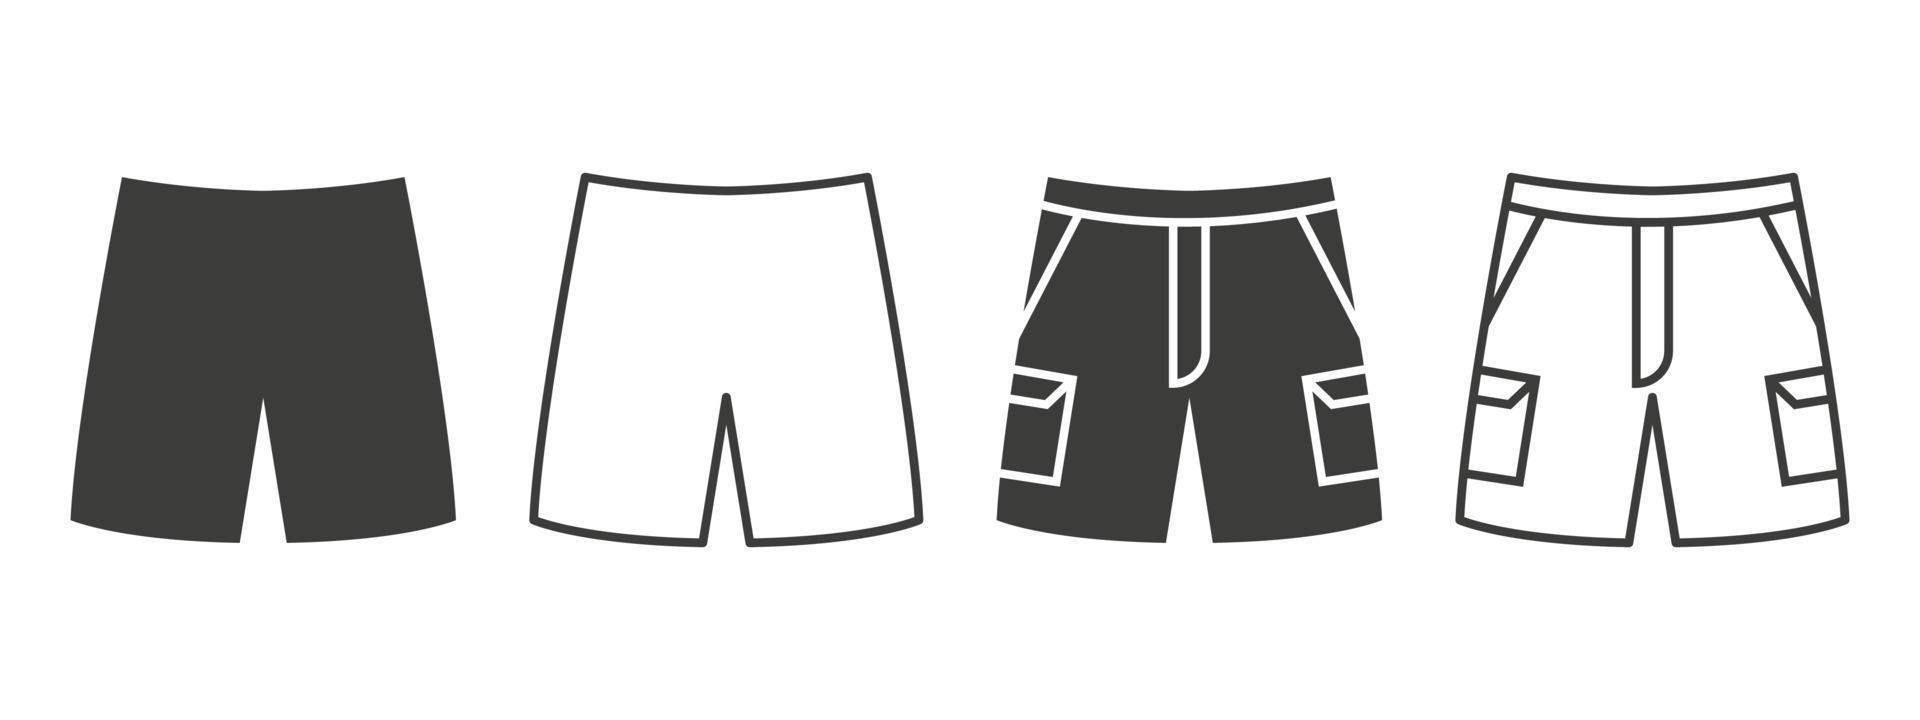 iconos de pantalones cortos. pantalones cortos con bolsillos de diferentes estilos. concepto de símbolo de ropa. ilustración vectorial vector